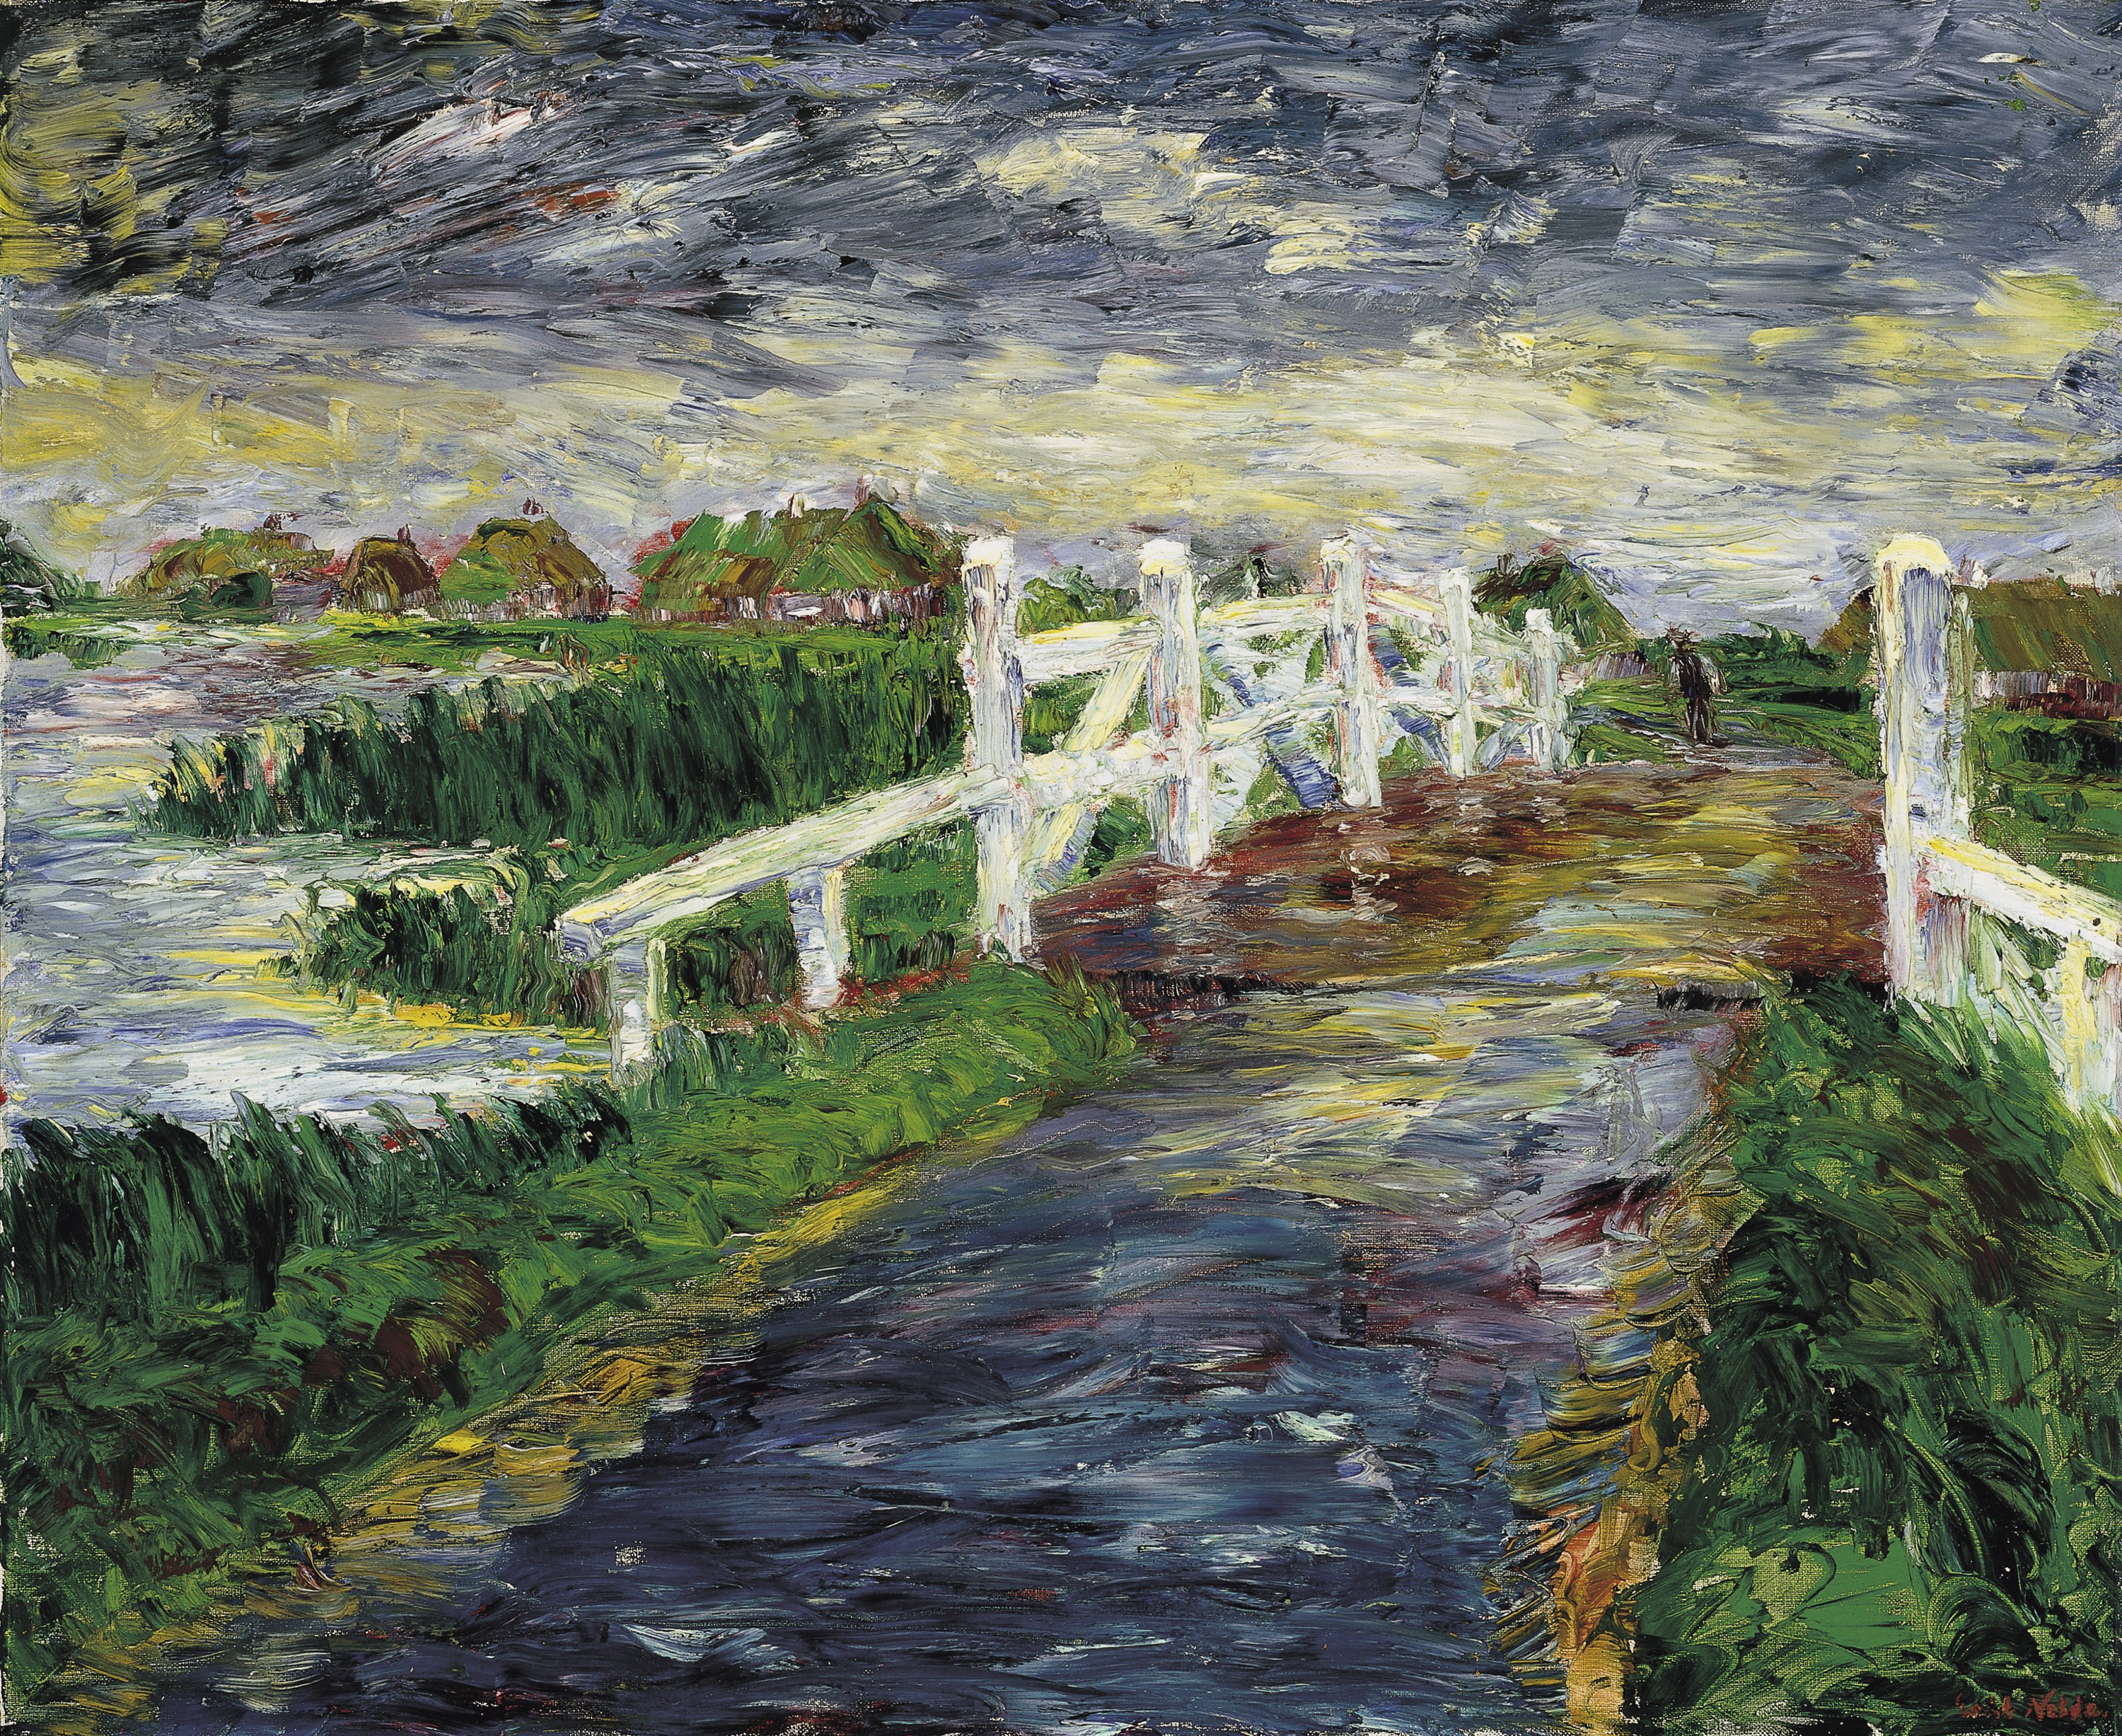 Marsh Bridge. Puente en la marisma, 1910, Emil Nolde.